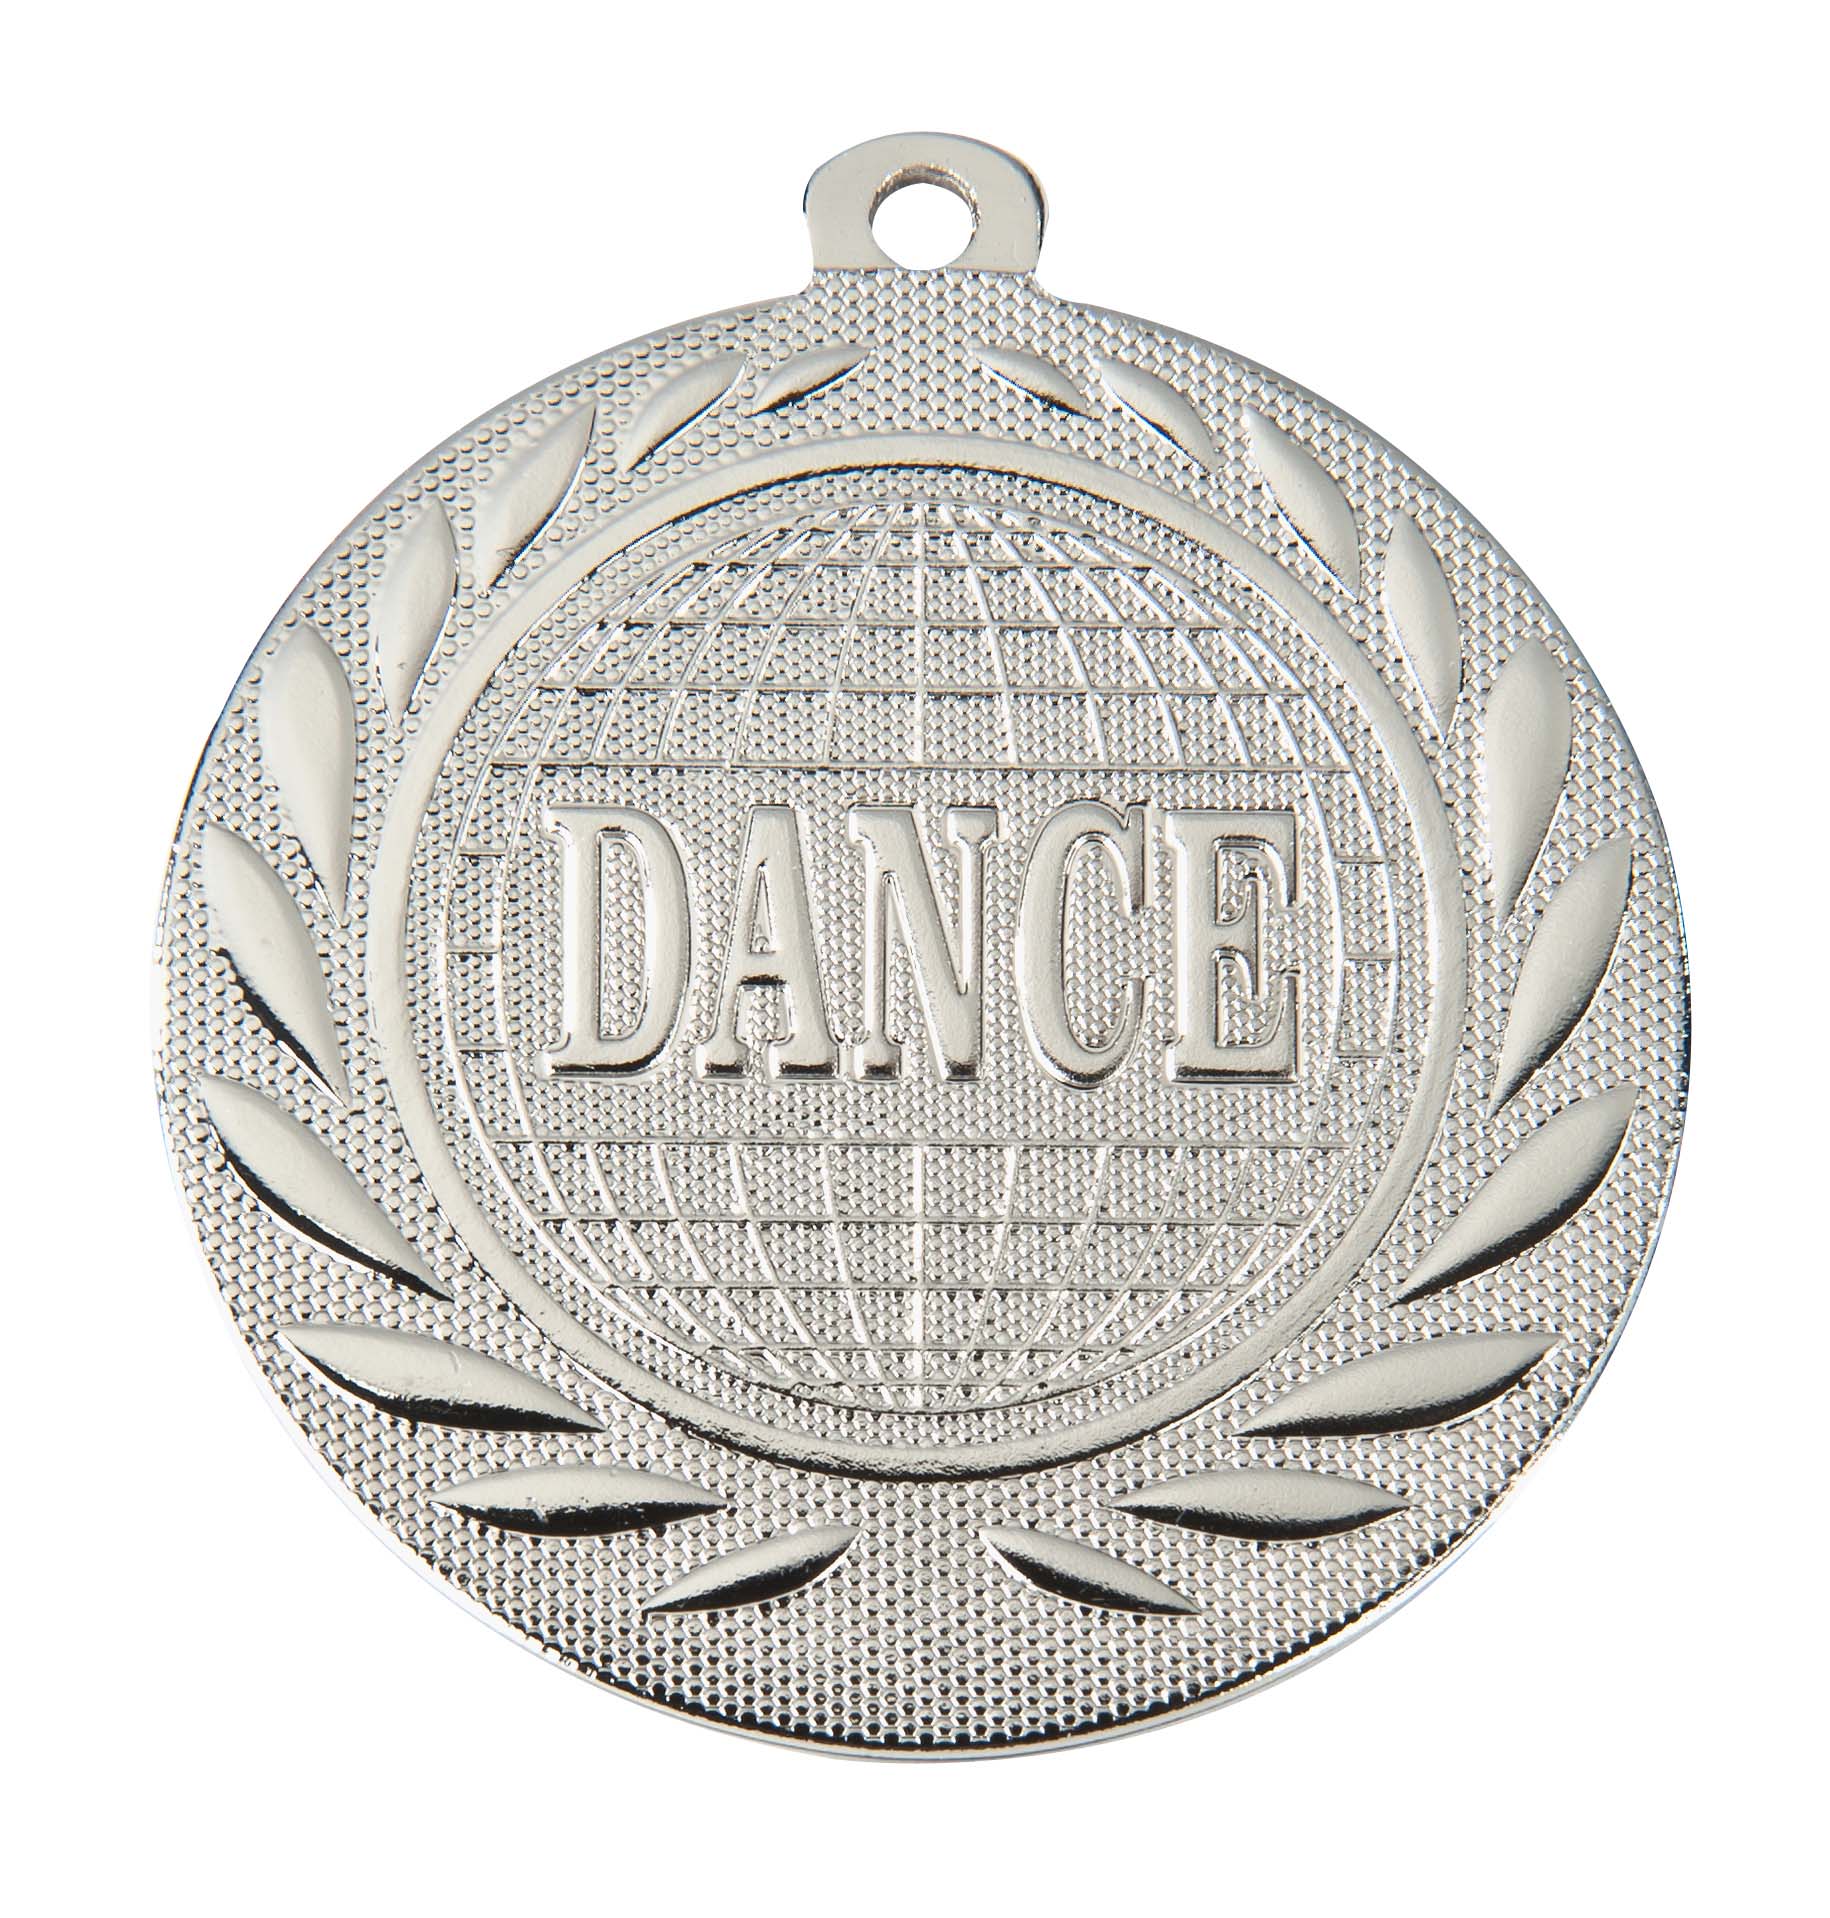 Dance-Medaille DI5000R inkl. Band und Beschriftung Silber Fertig montiert gegen Aufpreis